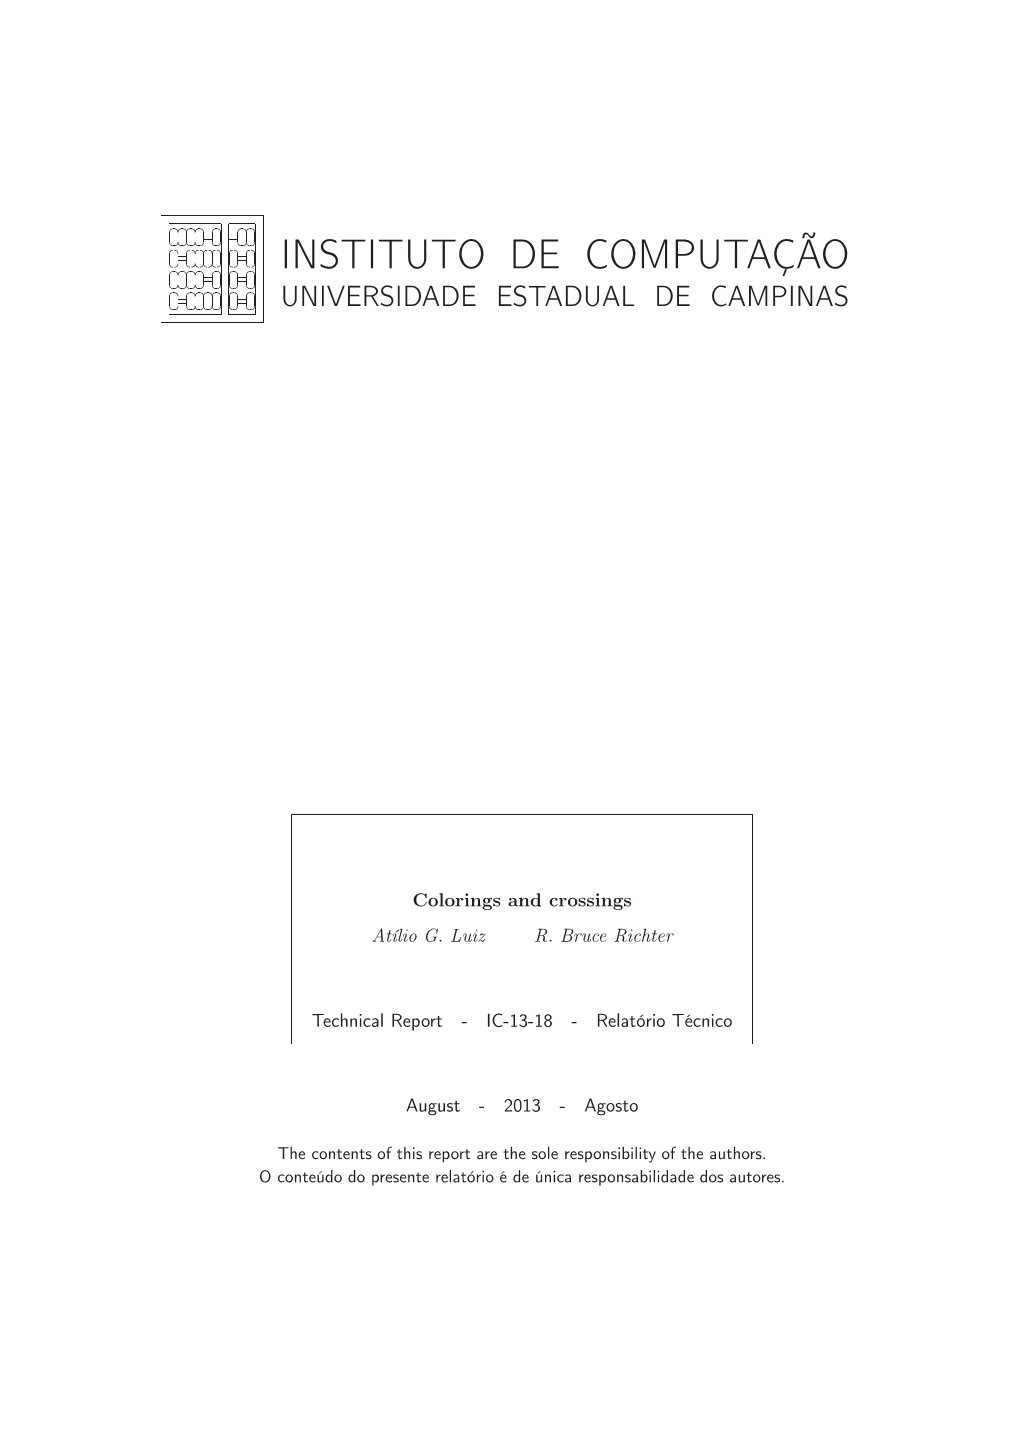 Instituto De Computação ✄✂ ✁✂✄✁✂✄✁✂ ✄✁ ✄✂✁ ✄✂ ✁✄✂ ✁ ✂✁✂✁✂✁✂✁✂✁✂✁✂✁ Universidade Estadual De Campinas